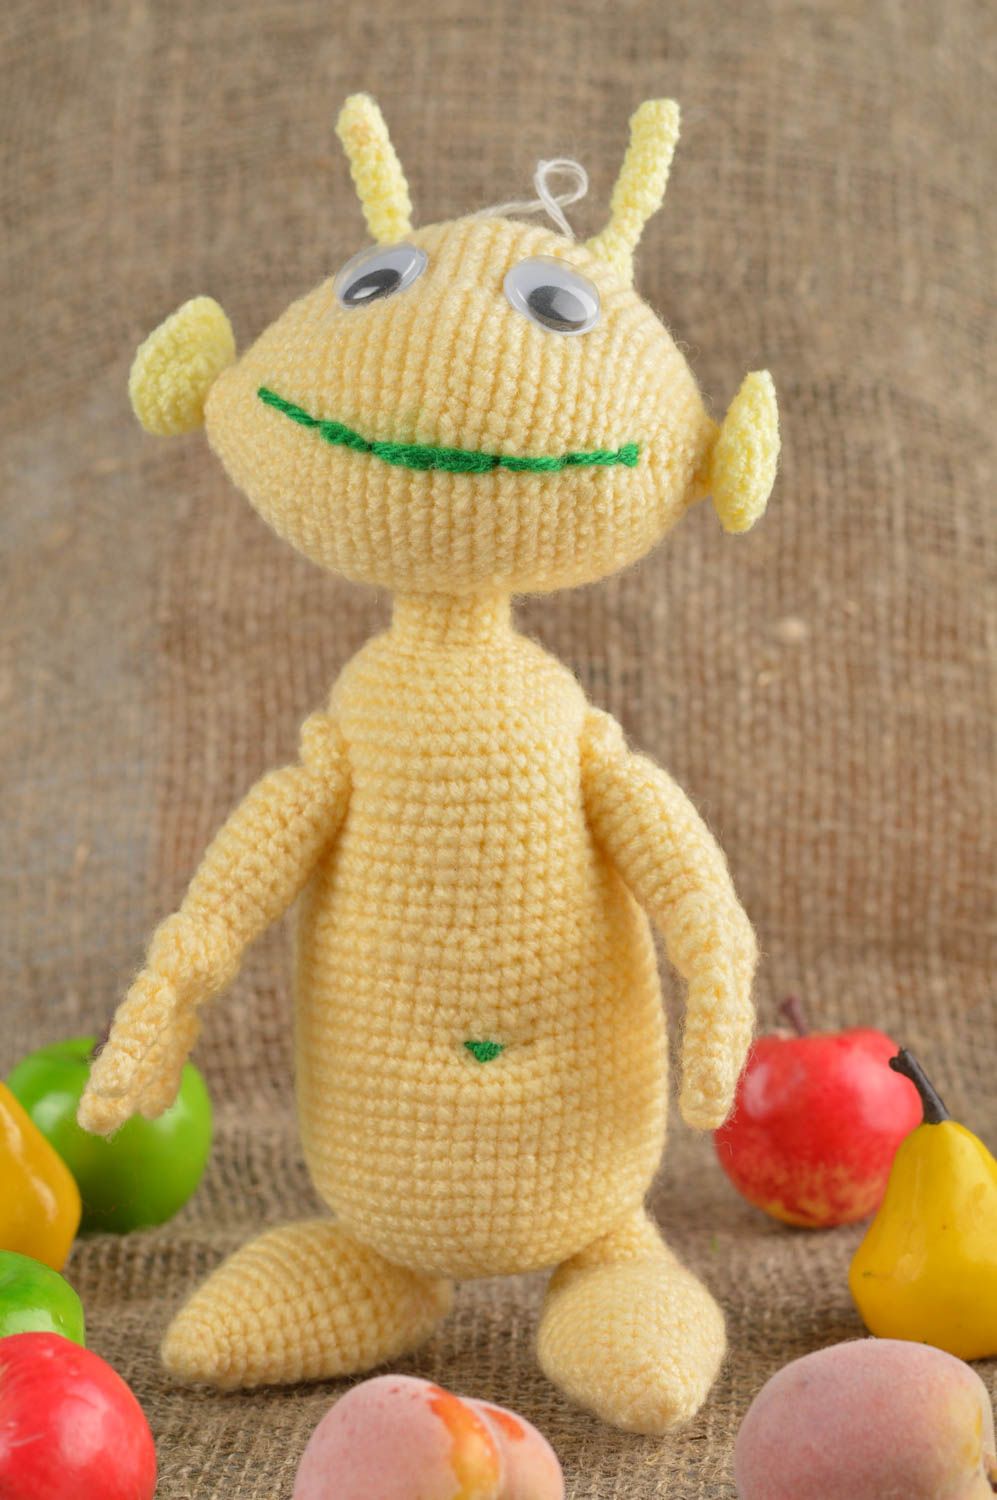 Handmade crocheted toys creative toys for children stylish toys nursery decor photo 1